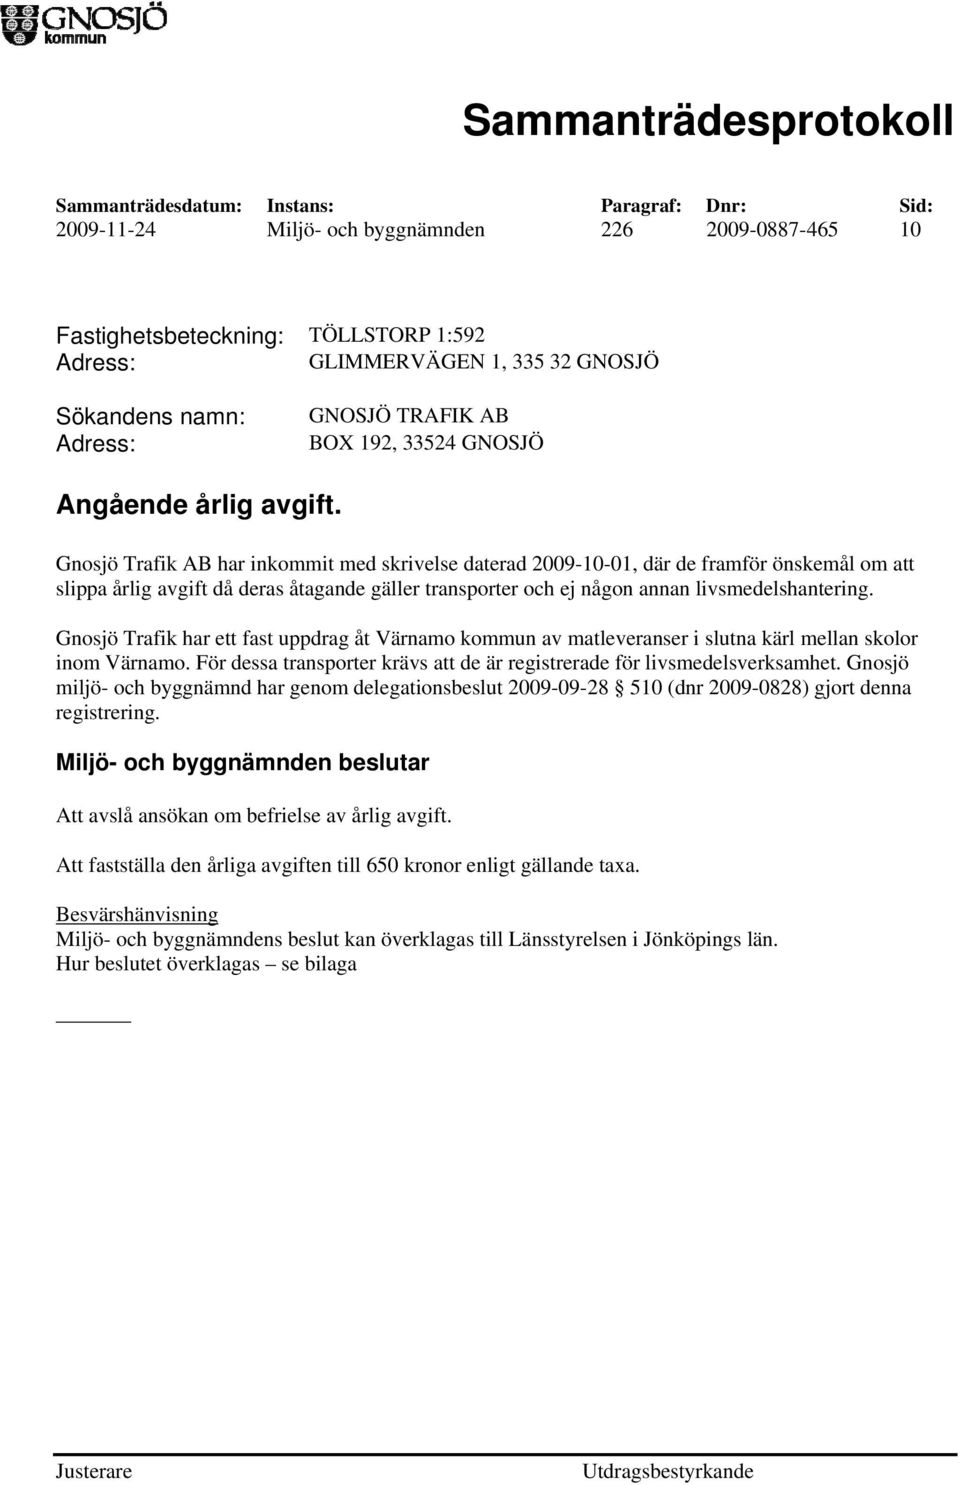 Gnosjö Trafik AB har inkommit med skrivelse daterad 2009-10-01, där de framför önskemål om att slippa årlig avgift då deras åtagande gäller transporter och ej någon annan livsmedelshantering.